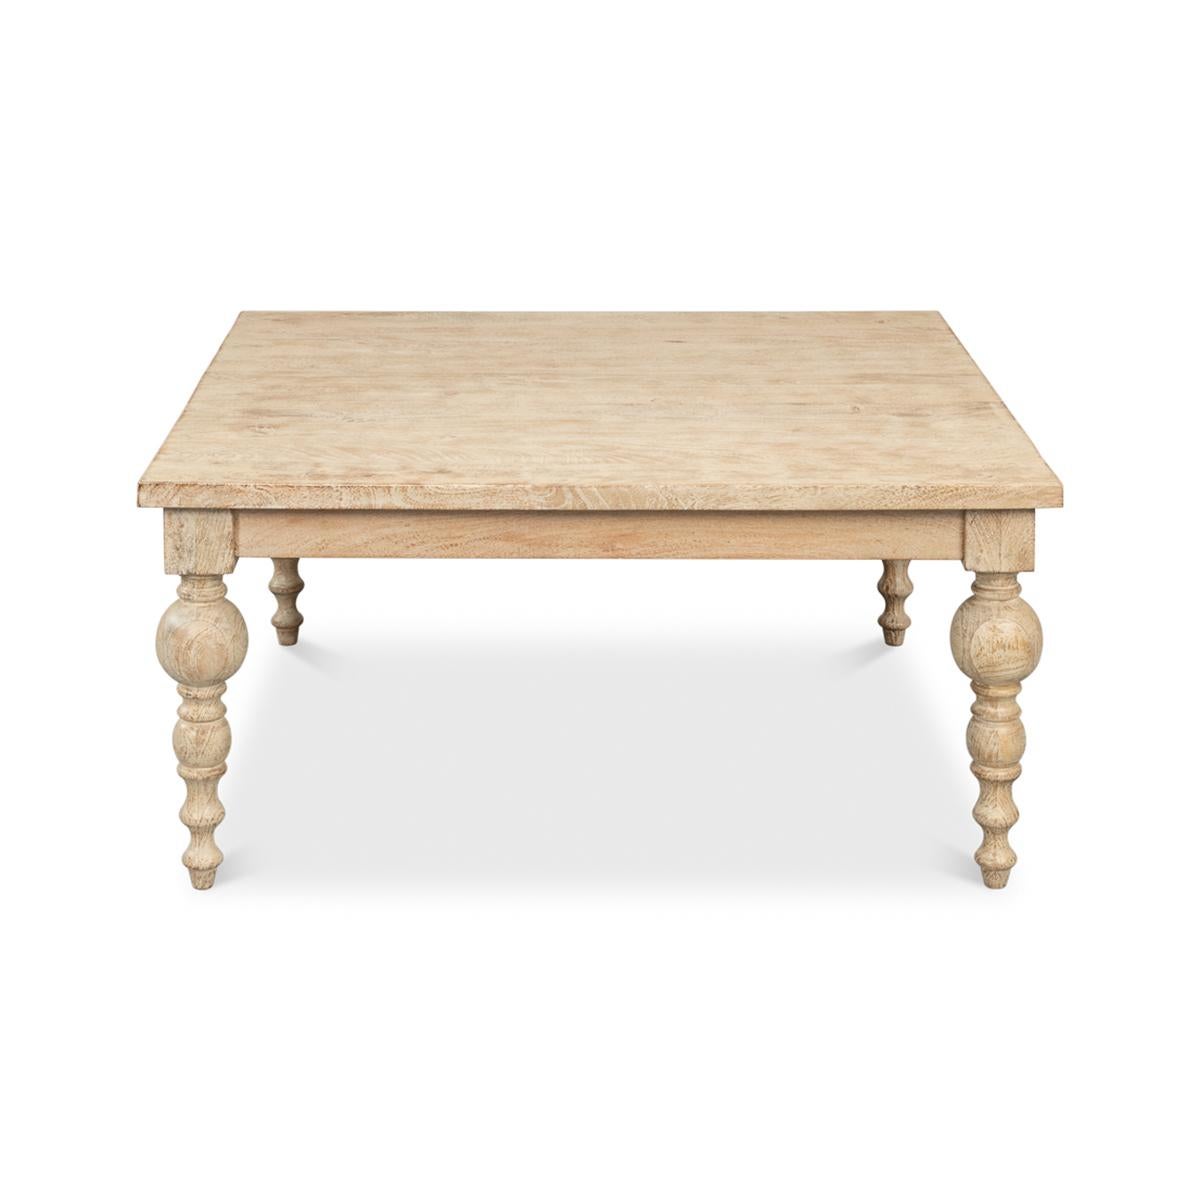 Table basse organique naturelle en bois de manguier dans notre finition terre de Sienne, avec des pieds audacieux, tournés et effilés.

Dimensions : 39